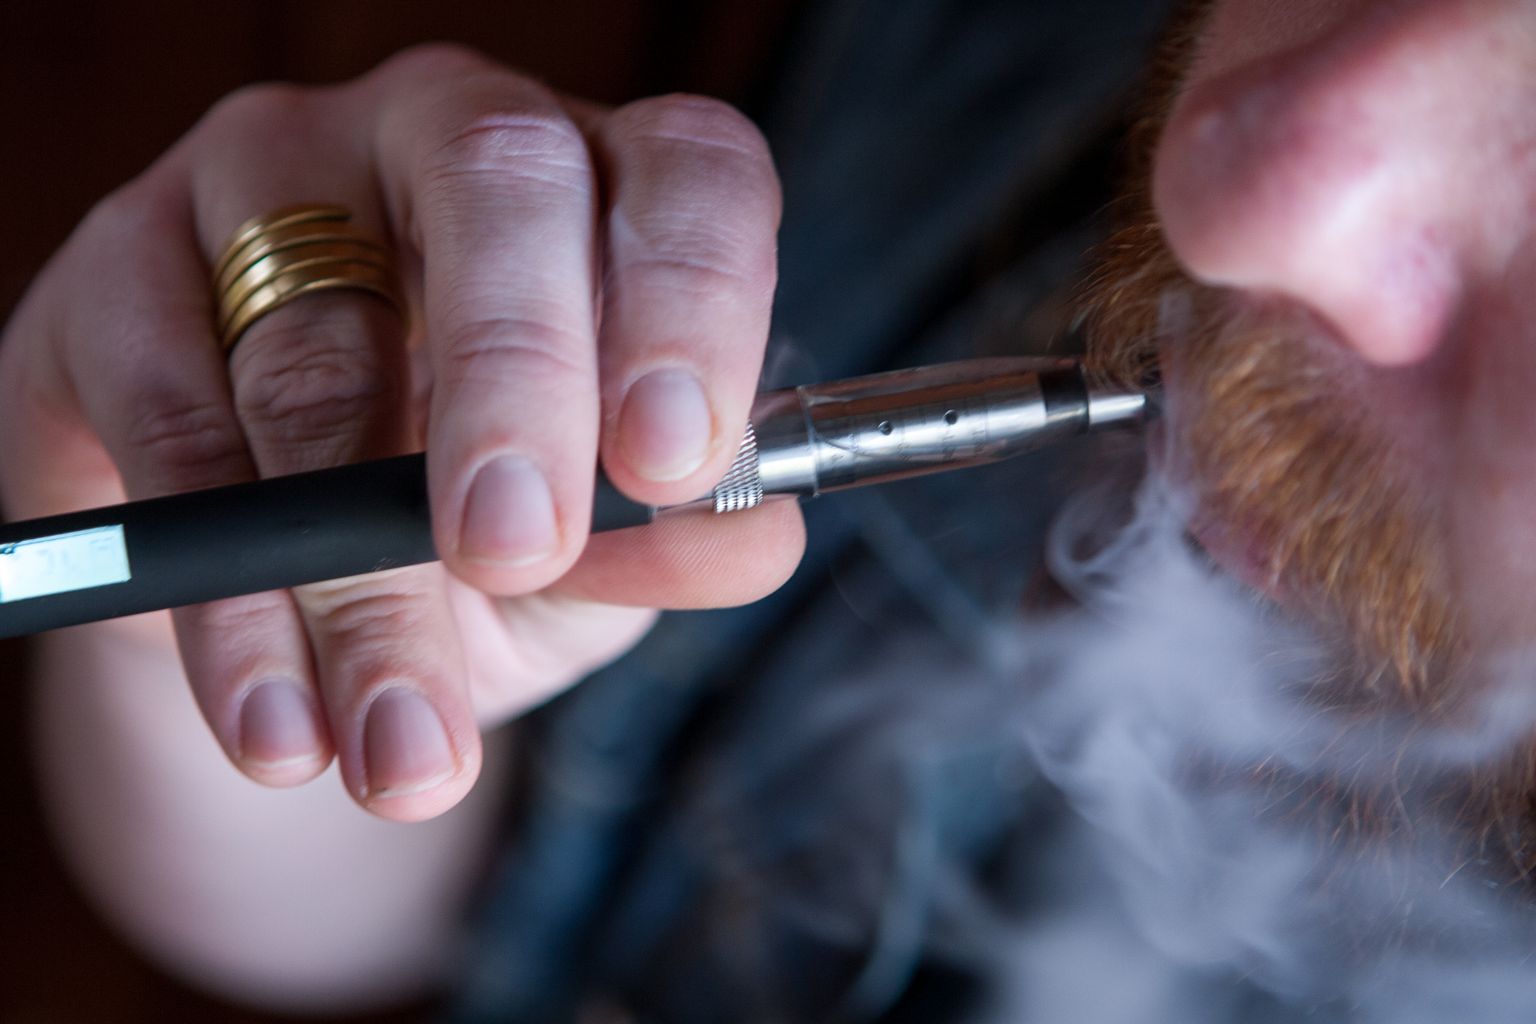 Juulist jõustub nõue, et e-sigarettide vedelik ei või sisaldada maitse- ega lõhnaaineid, välja arvatud tubaka maitse ja lõhn